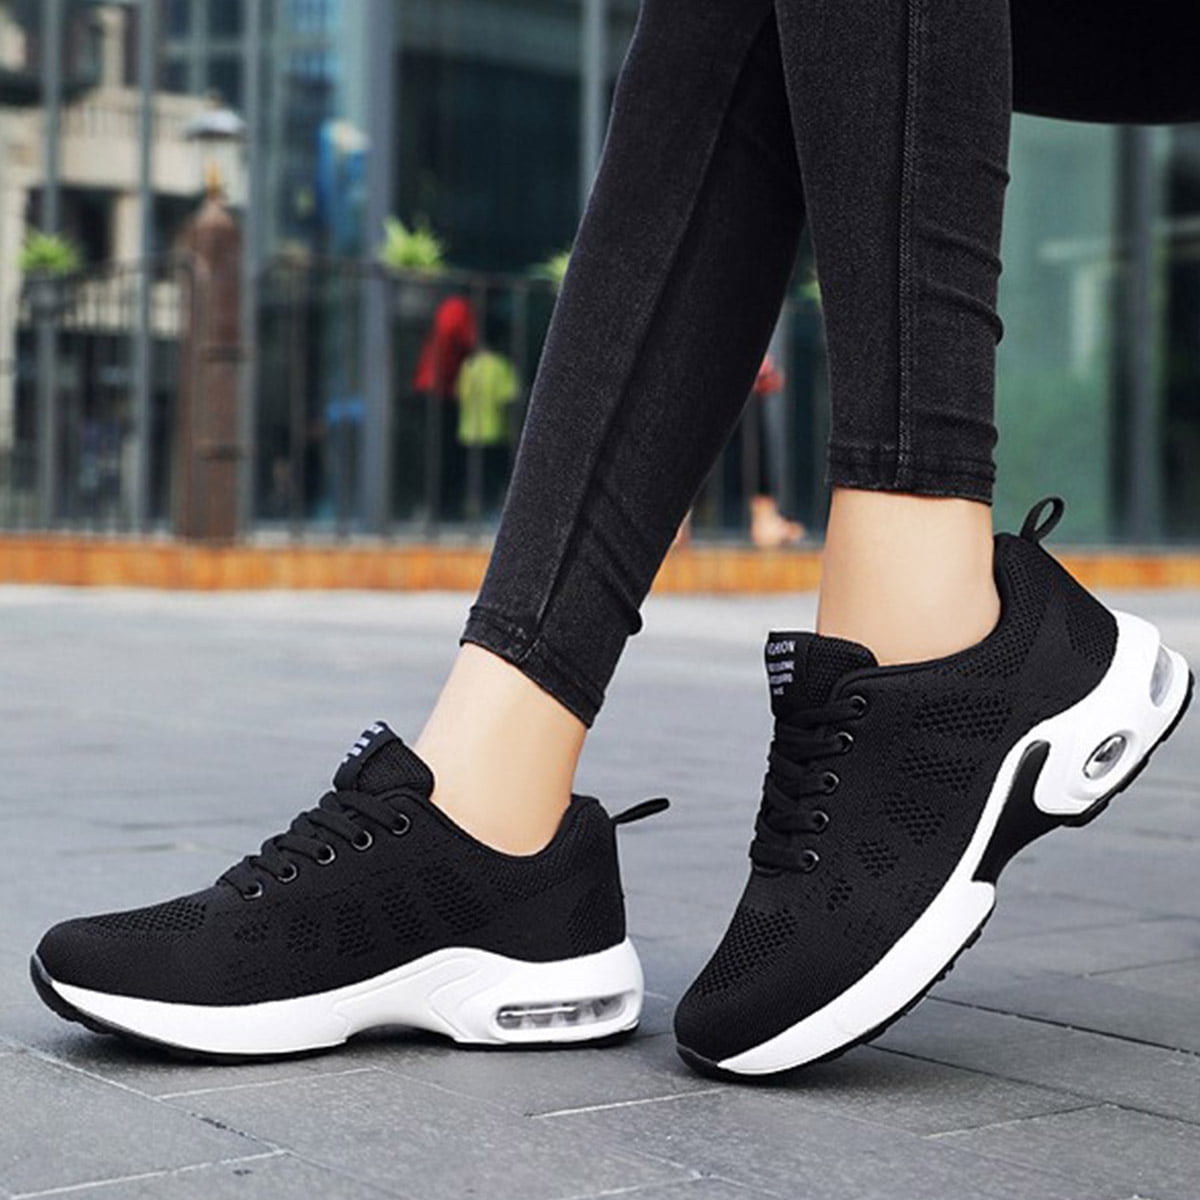 Women Tennis Shoes Ladies Casual Athletic Walking Running Hiking Sport Sneakers 